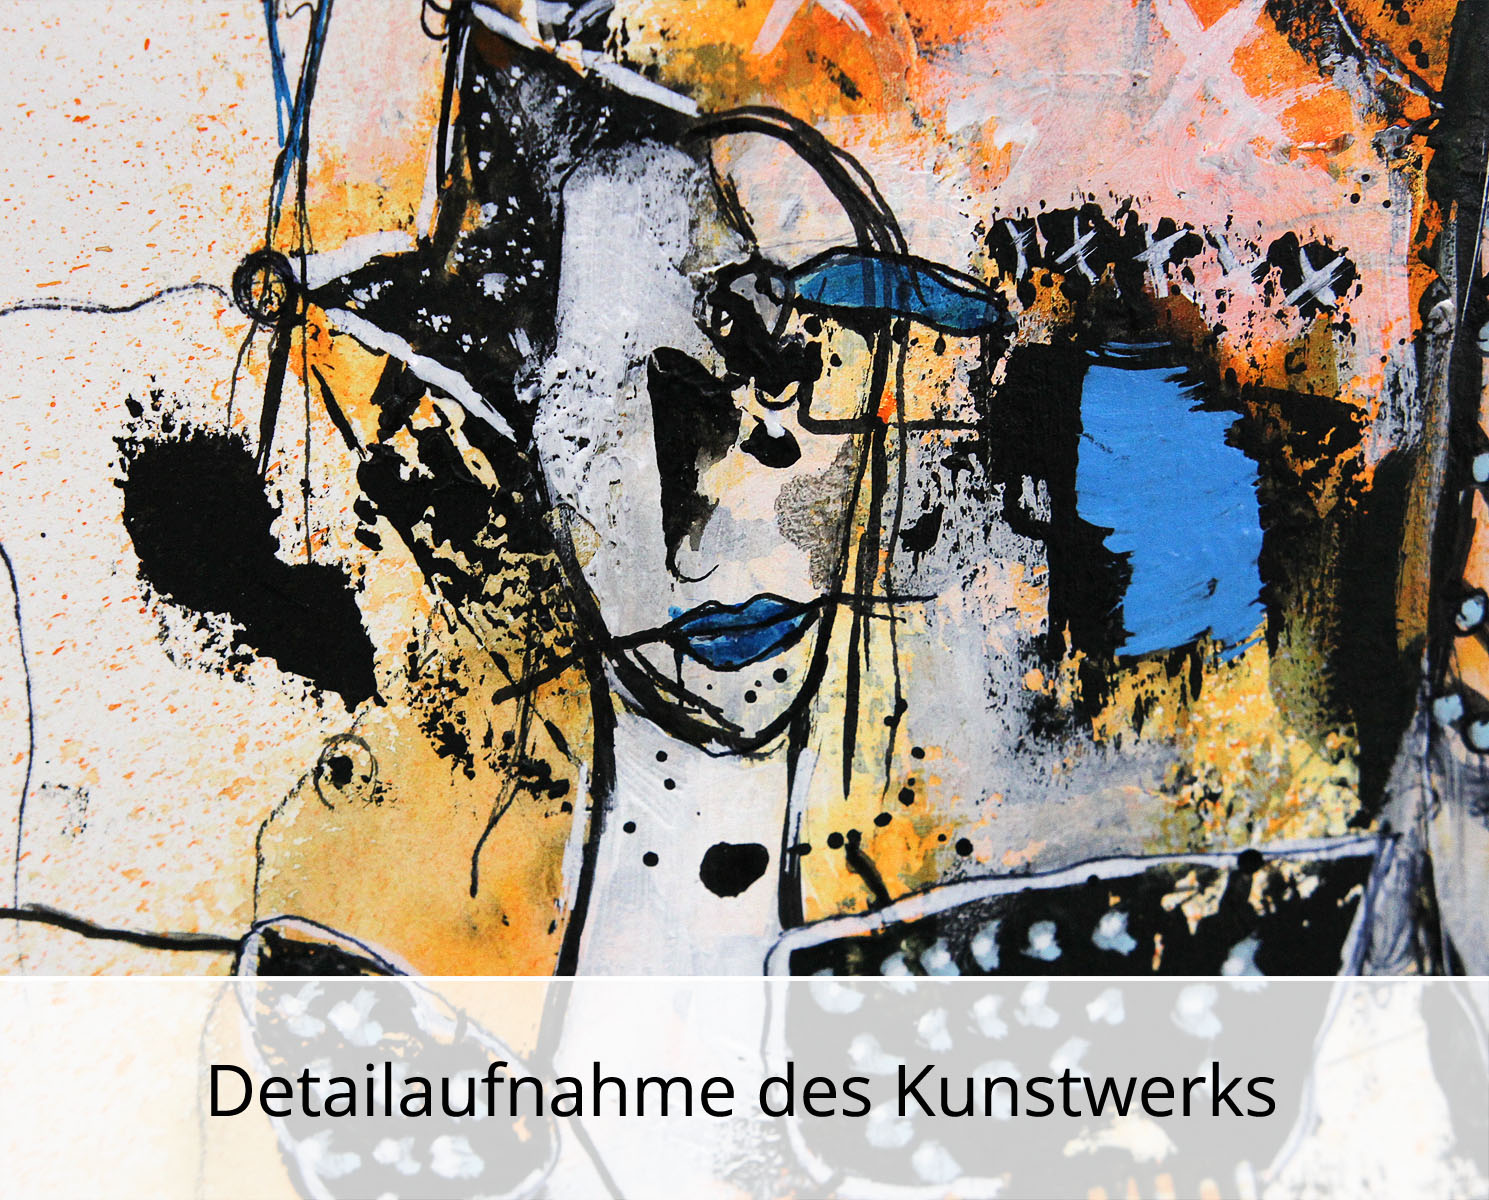 I. Schmidt: "Sunrise somewhere", zeitgenössische Grafik/Malerei, Original/Unikat